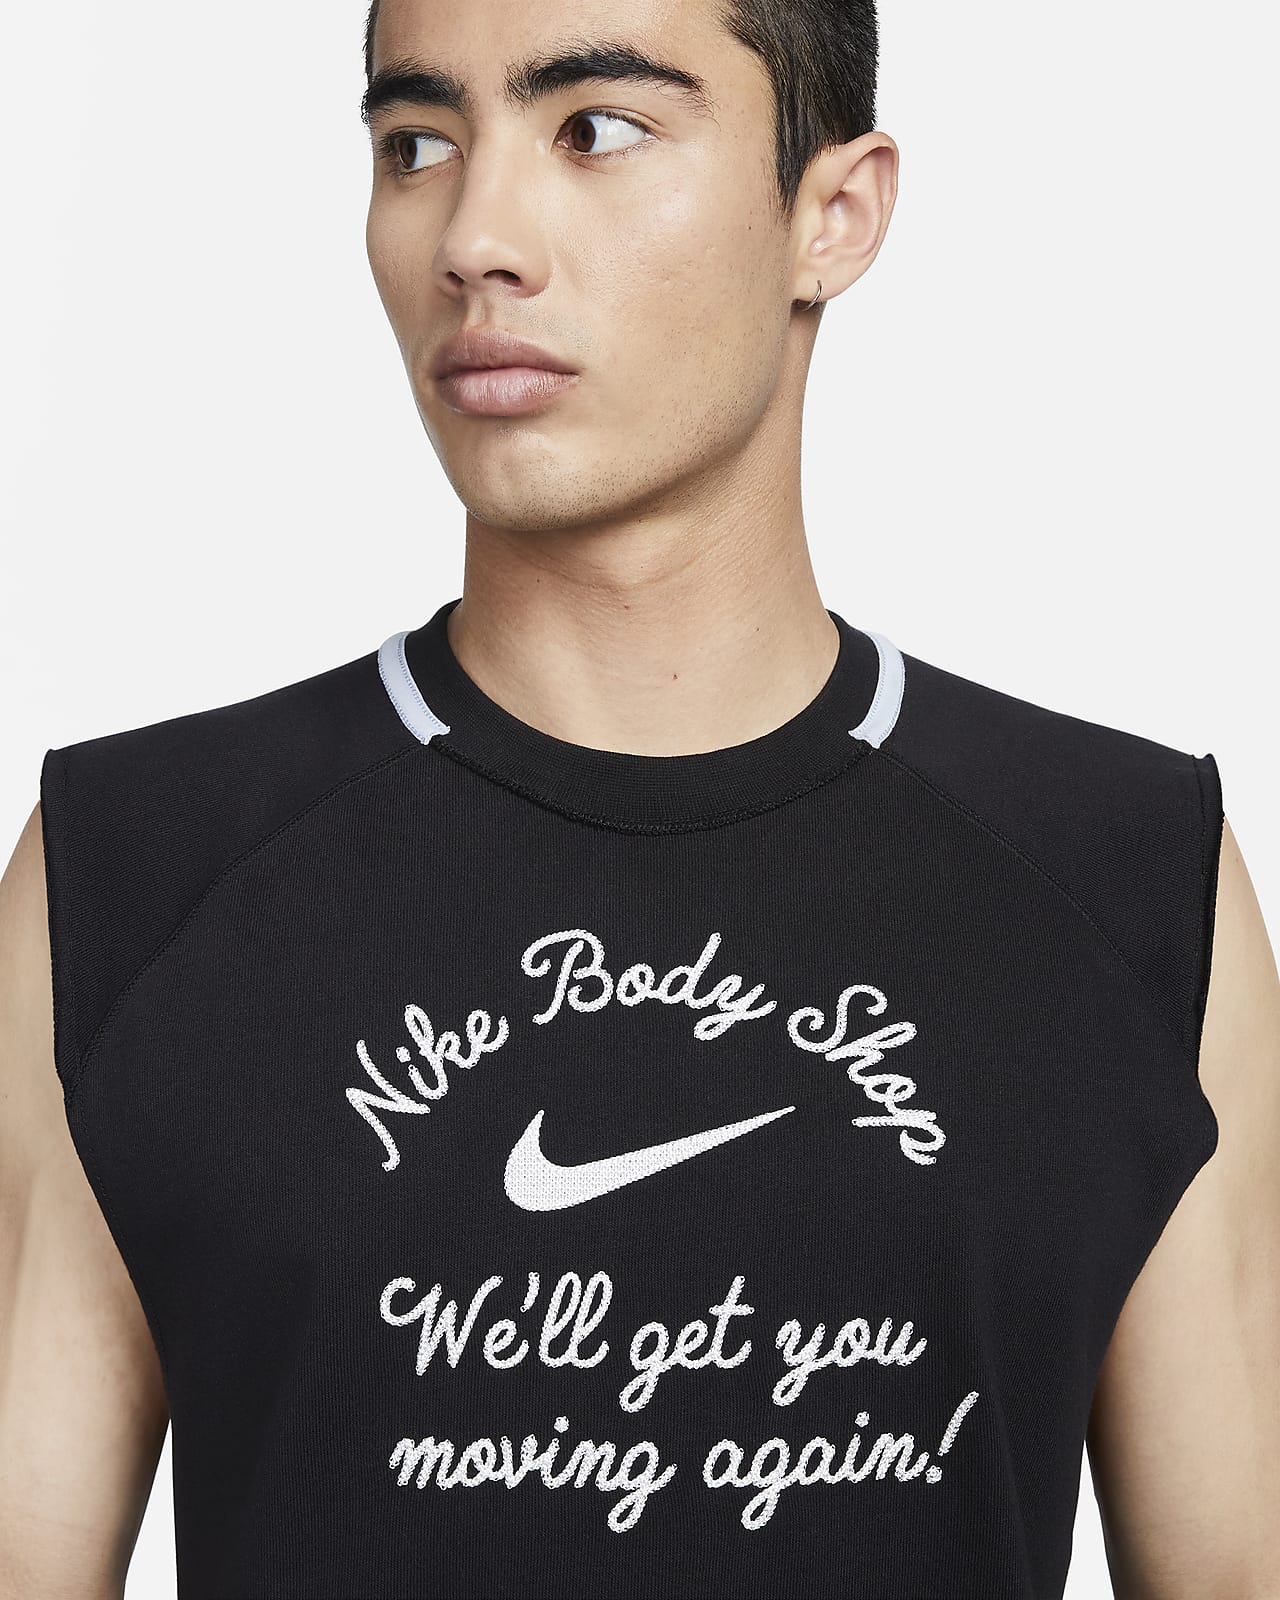 Hommes Sans manches/Débardeur Sweats à capuche et sweat-shirts. Nike FR